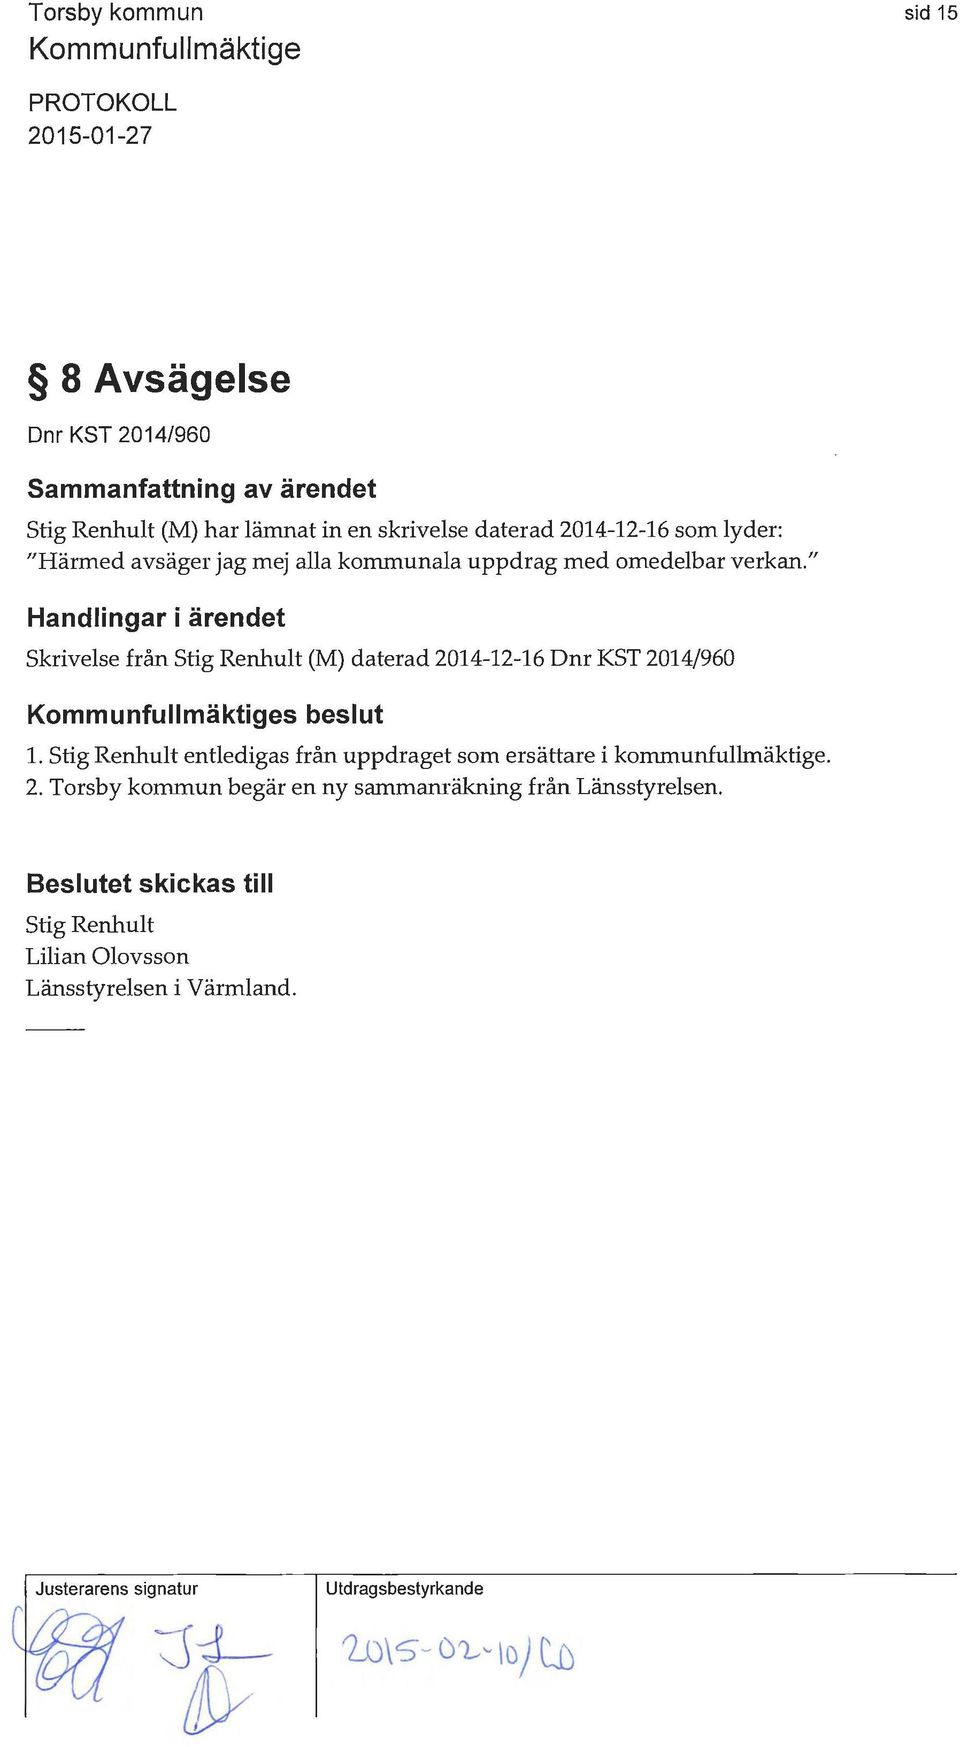 " Handlingar i ärendet Skrivelse från Stig Renhult (M) daterad 2014-12-16 Dnr KST 2014/960 s beslut l.